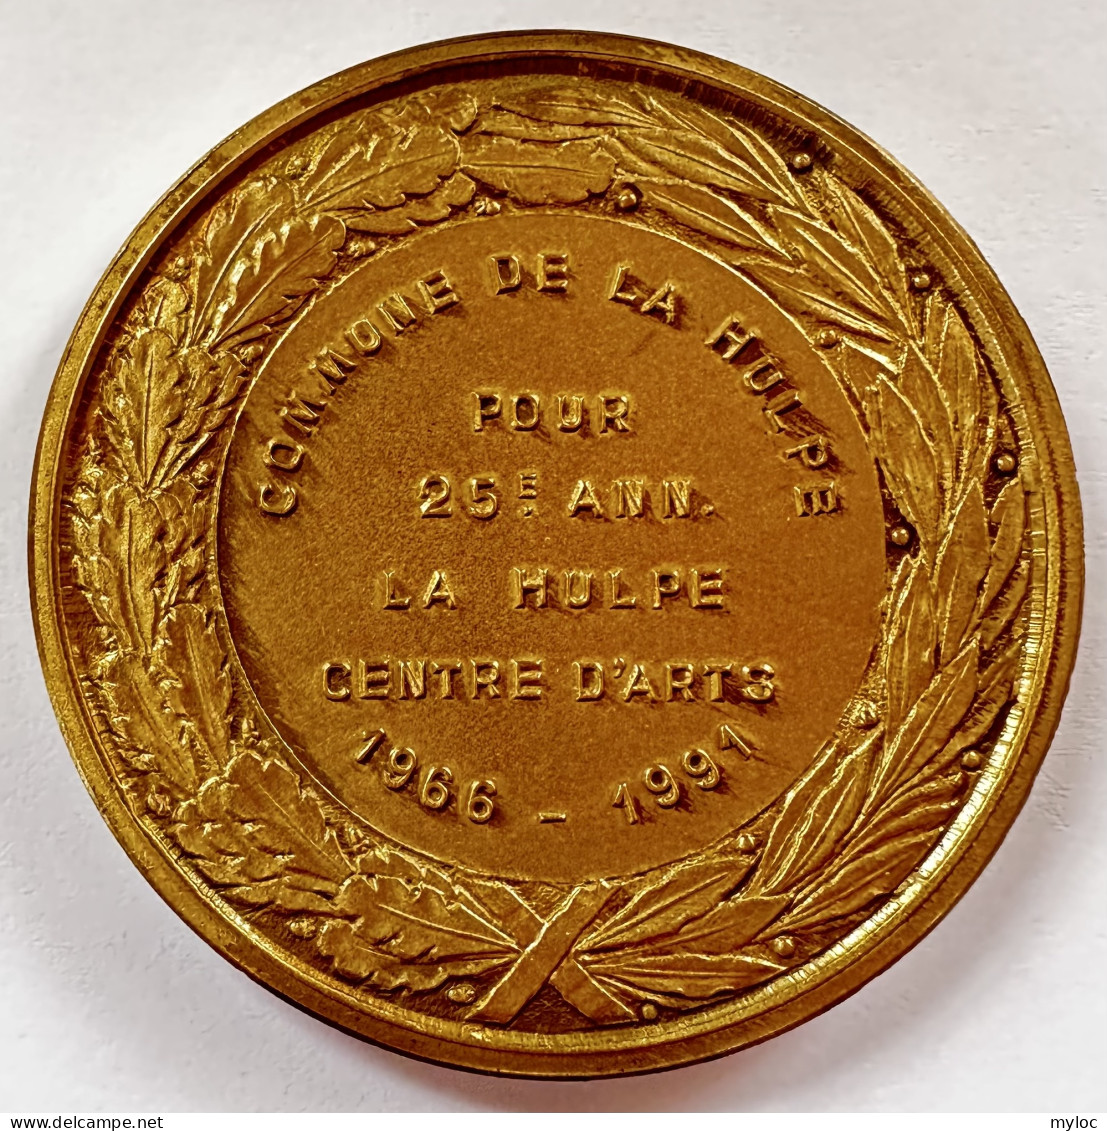 Médaille. Commune De La Hulpe. Pour 25éme Anniversaire. La Hulpe Centre D'Art. 1966-1991.  - Professionals / Firms